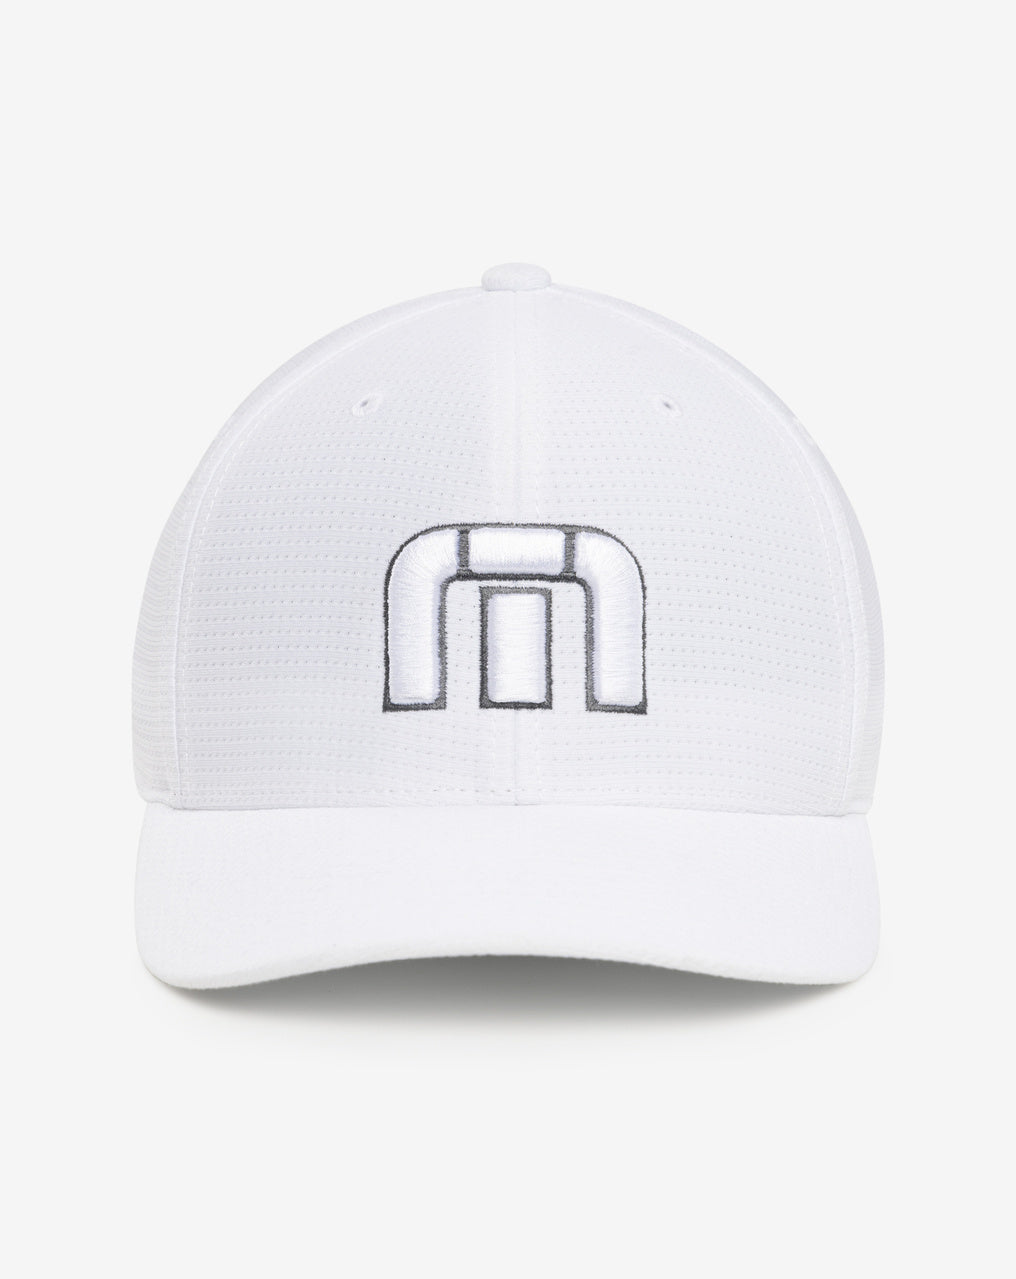 A TravisMathew golf hat in all white.